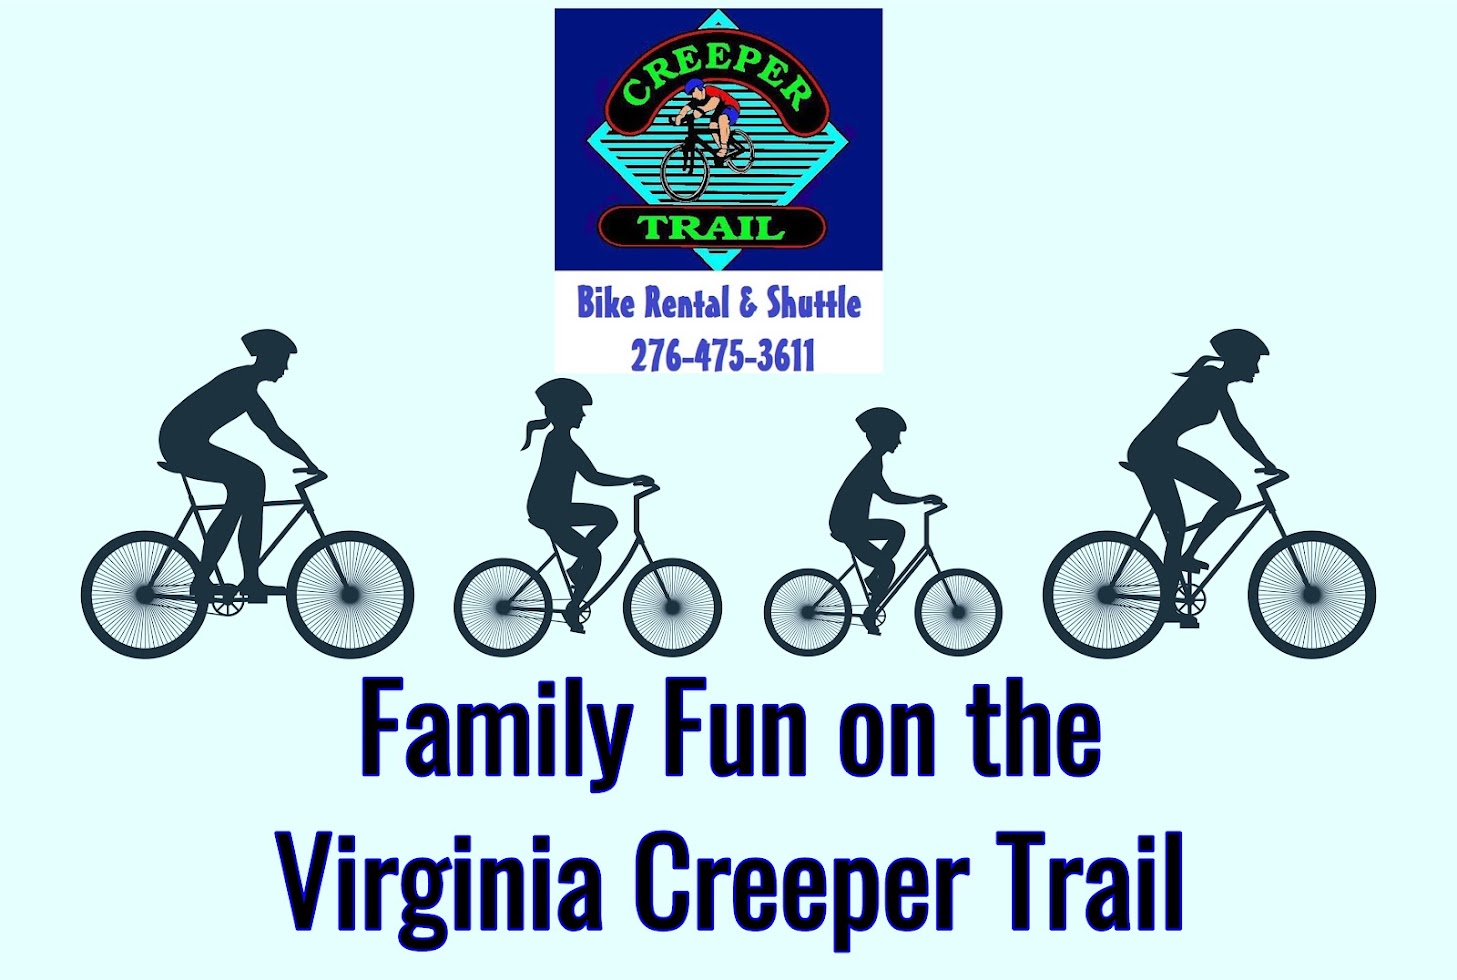 Creeper Trail Bike Rental & Shuttle